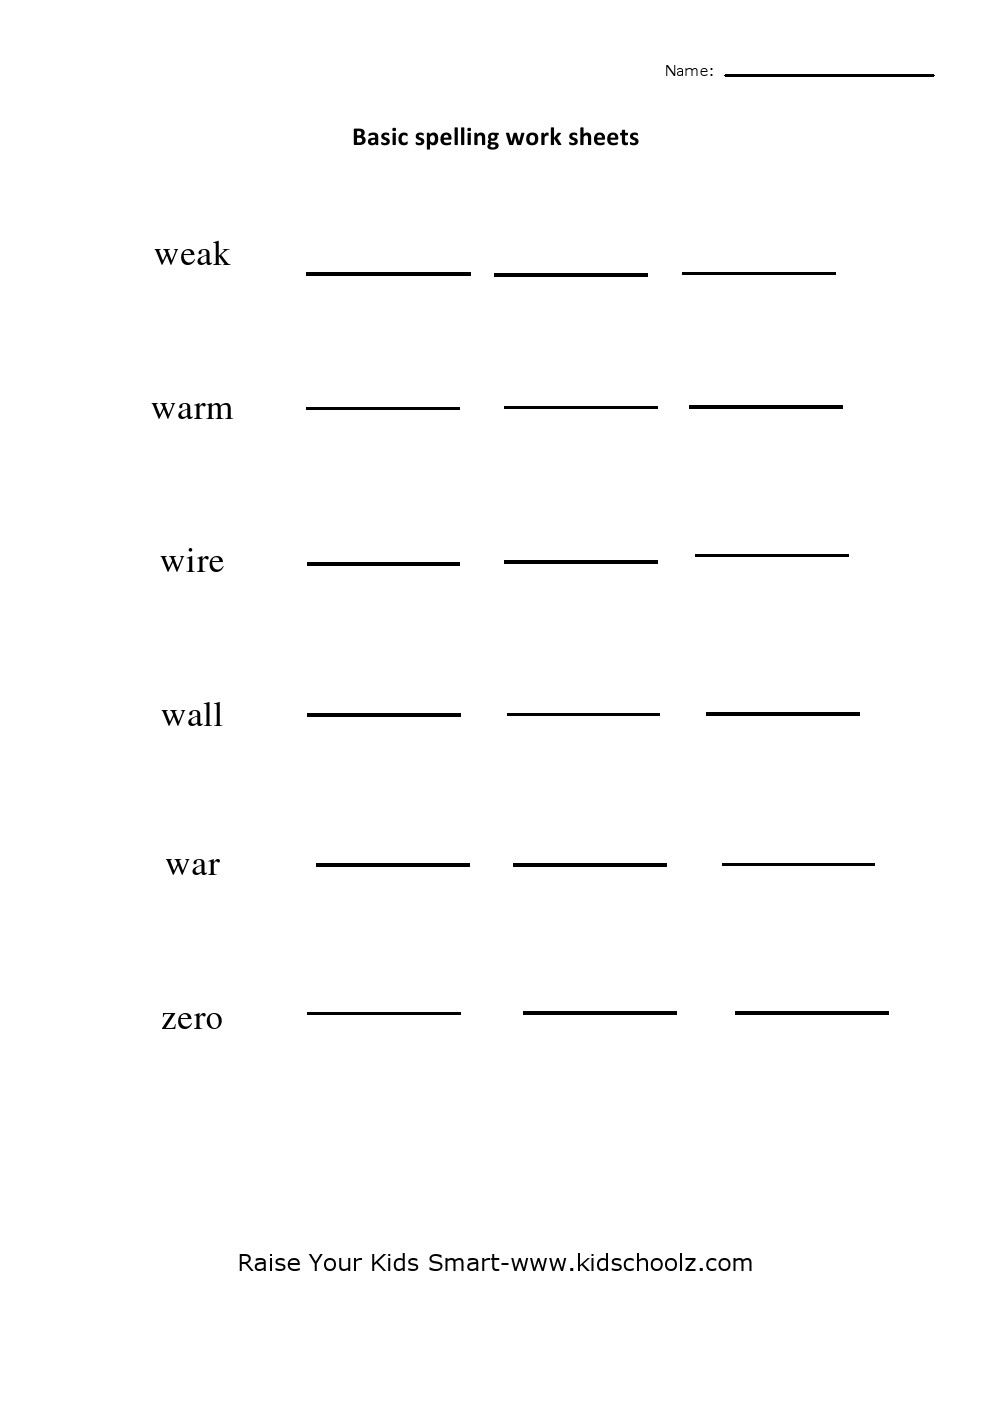 spelling-worksheets-general-spelling-worksheets